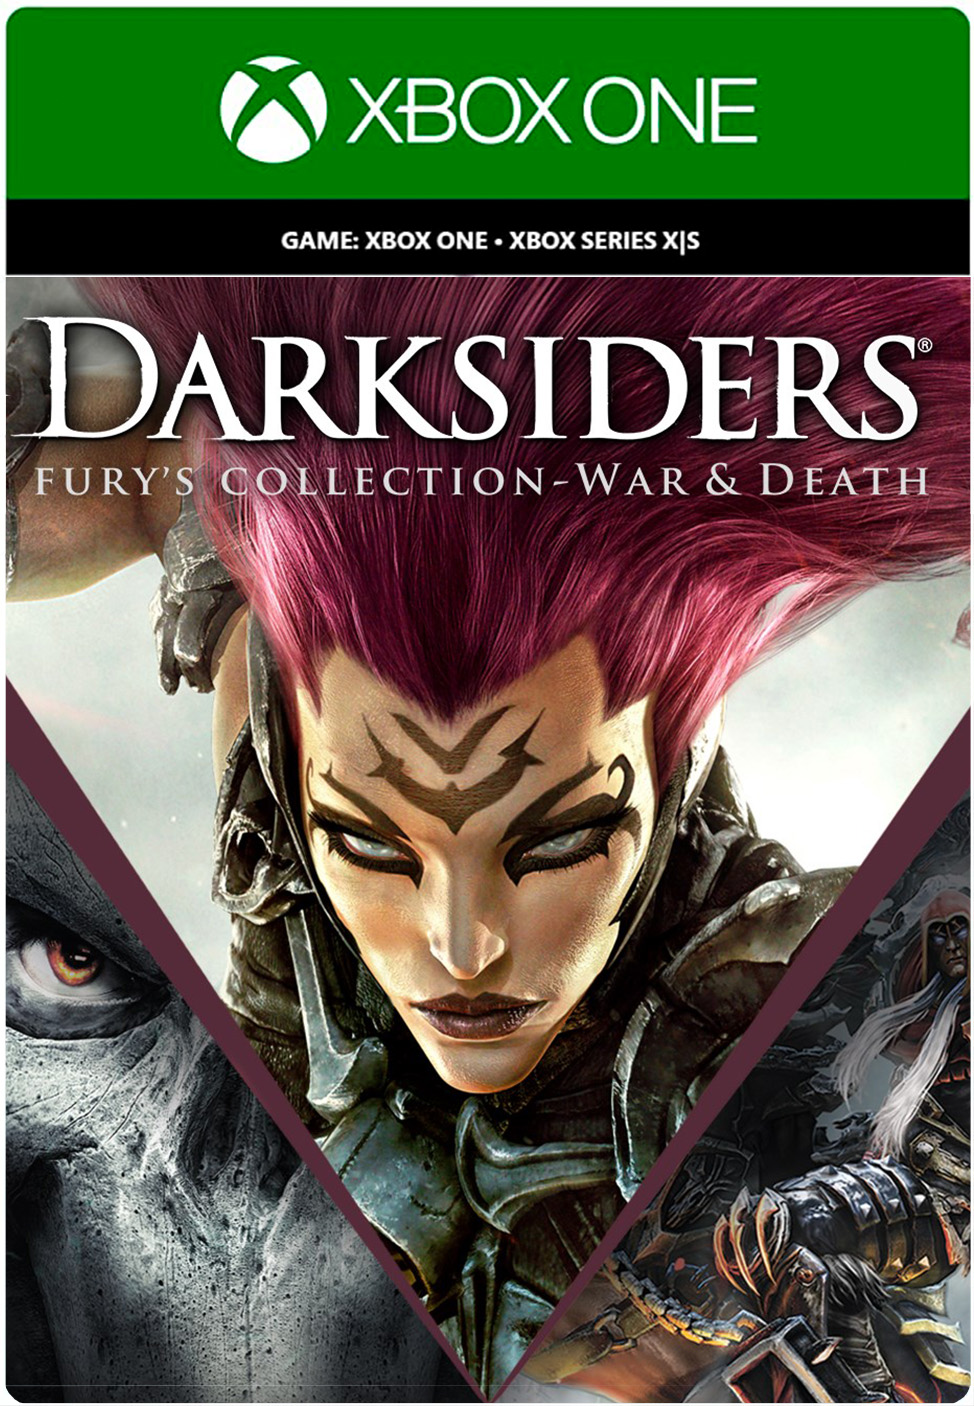 Игра Darksiders Fury's Collection - War and Death для Xbox One/Series X|S, Русский язык, электронный ключ Аргентина